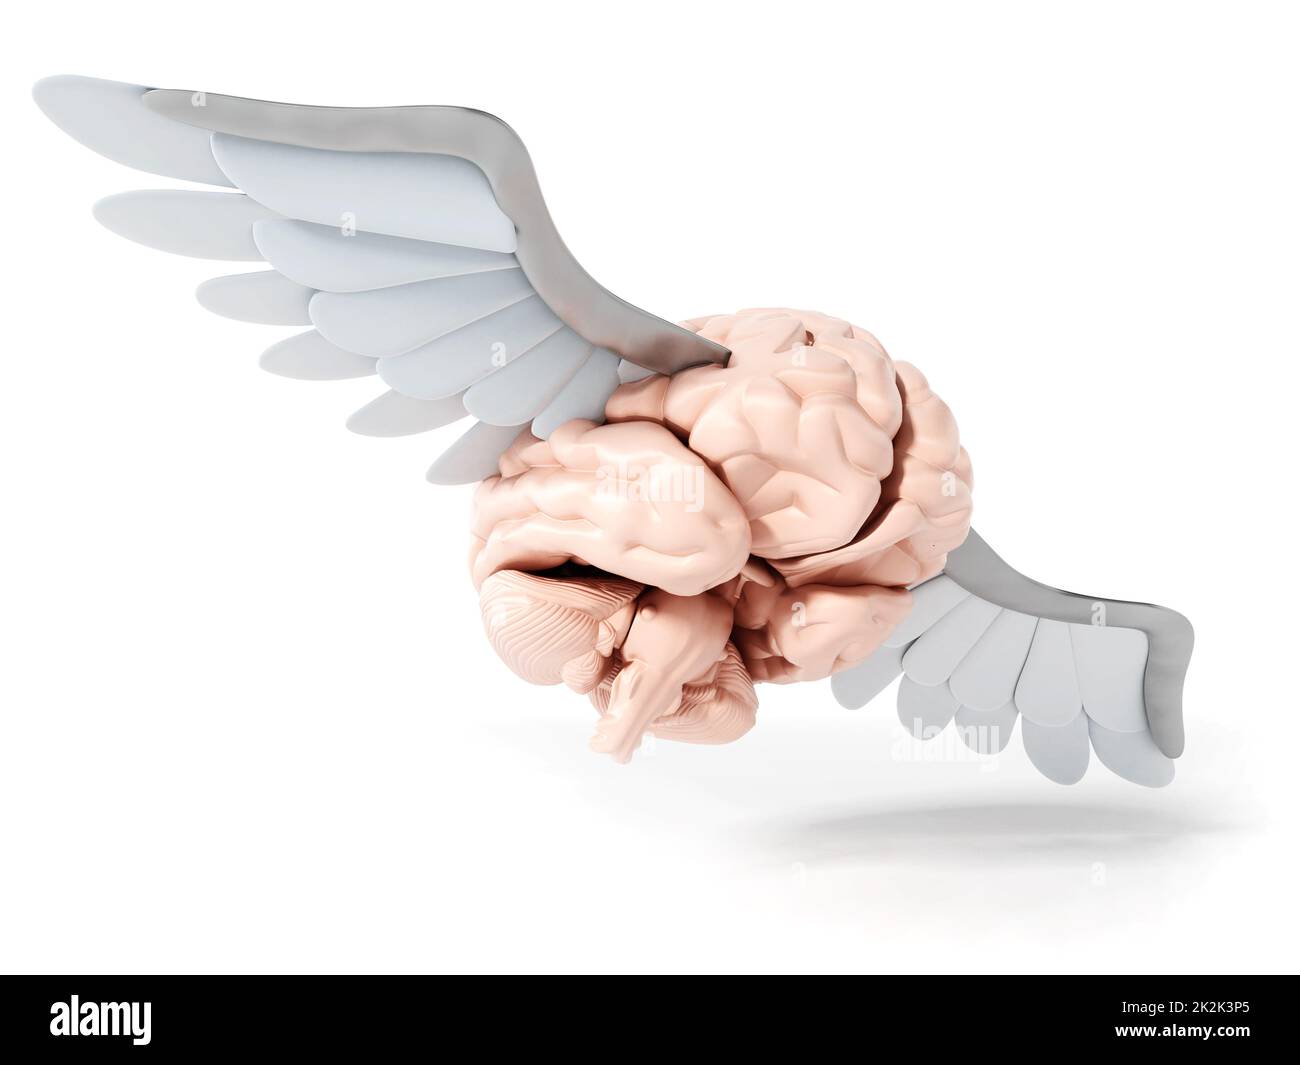 Cerveau volant avec ailes blanches. 3D illustration Banque D'Images